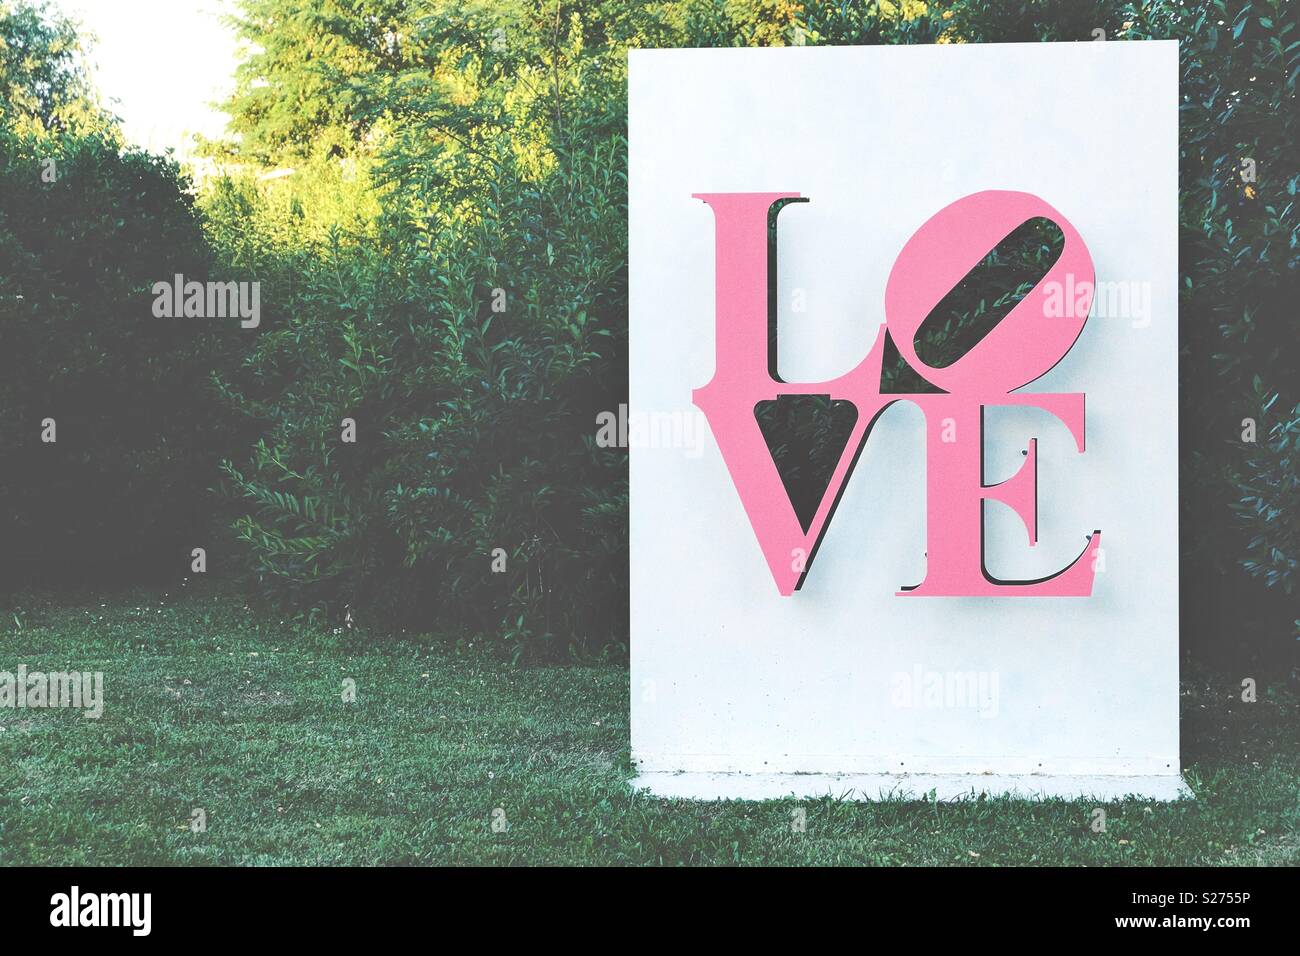 L'amour rose sculpture dans un jardin en plein air d'une journée ensoleillée Banque D'Images